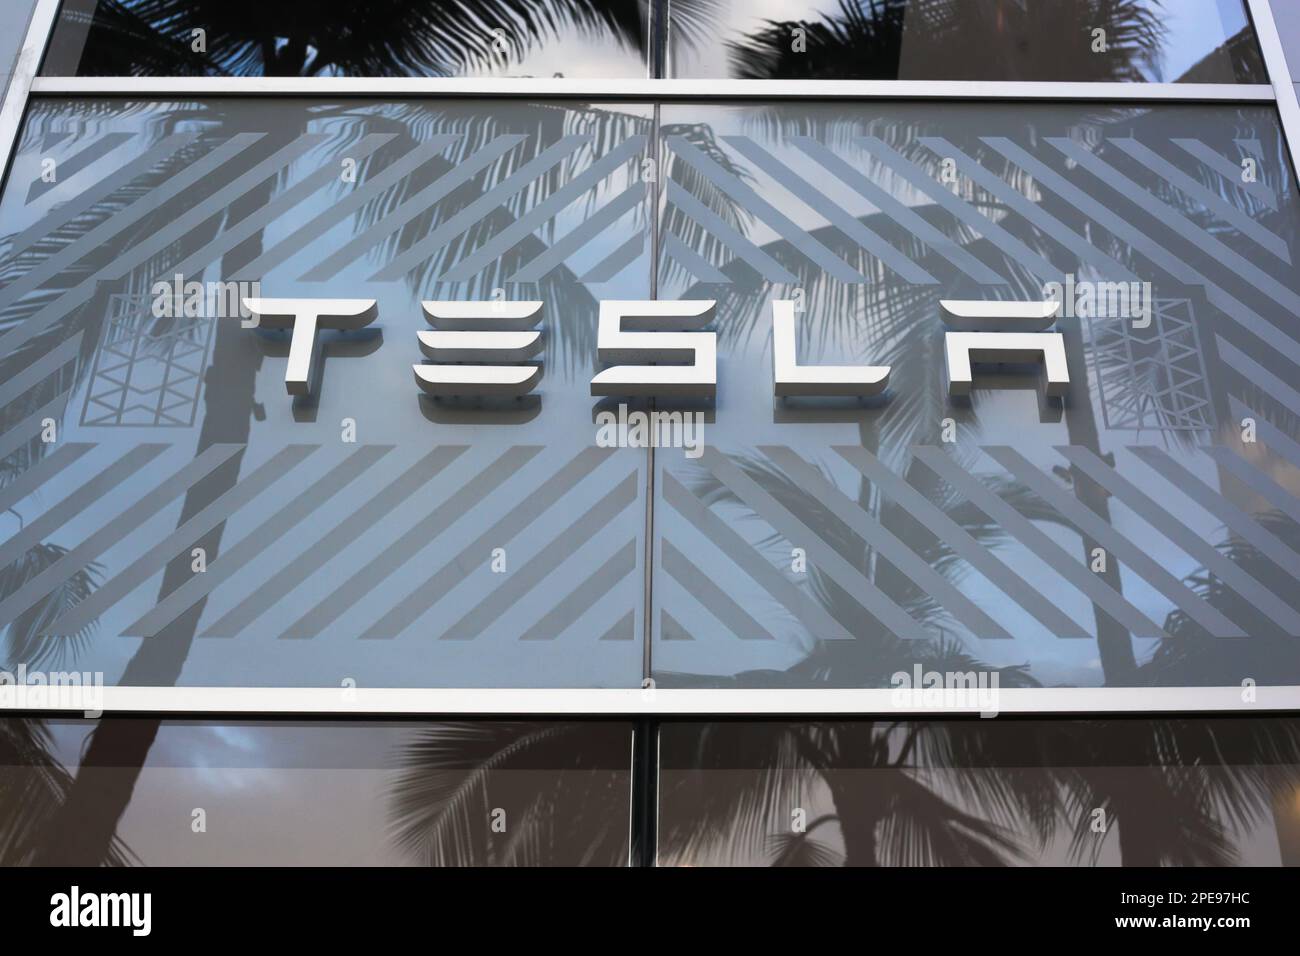 Honolulu, Hawaï - 19 juin 2020 : extérieur de la salle d'exposition Tesla Motors dans le quartier haut de gamme de Waikiki. Banque D'Images